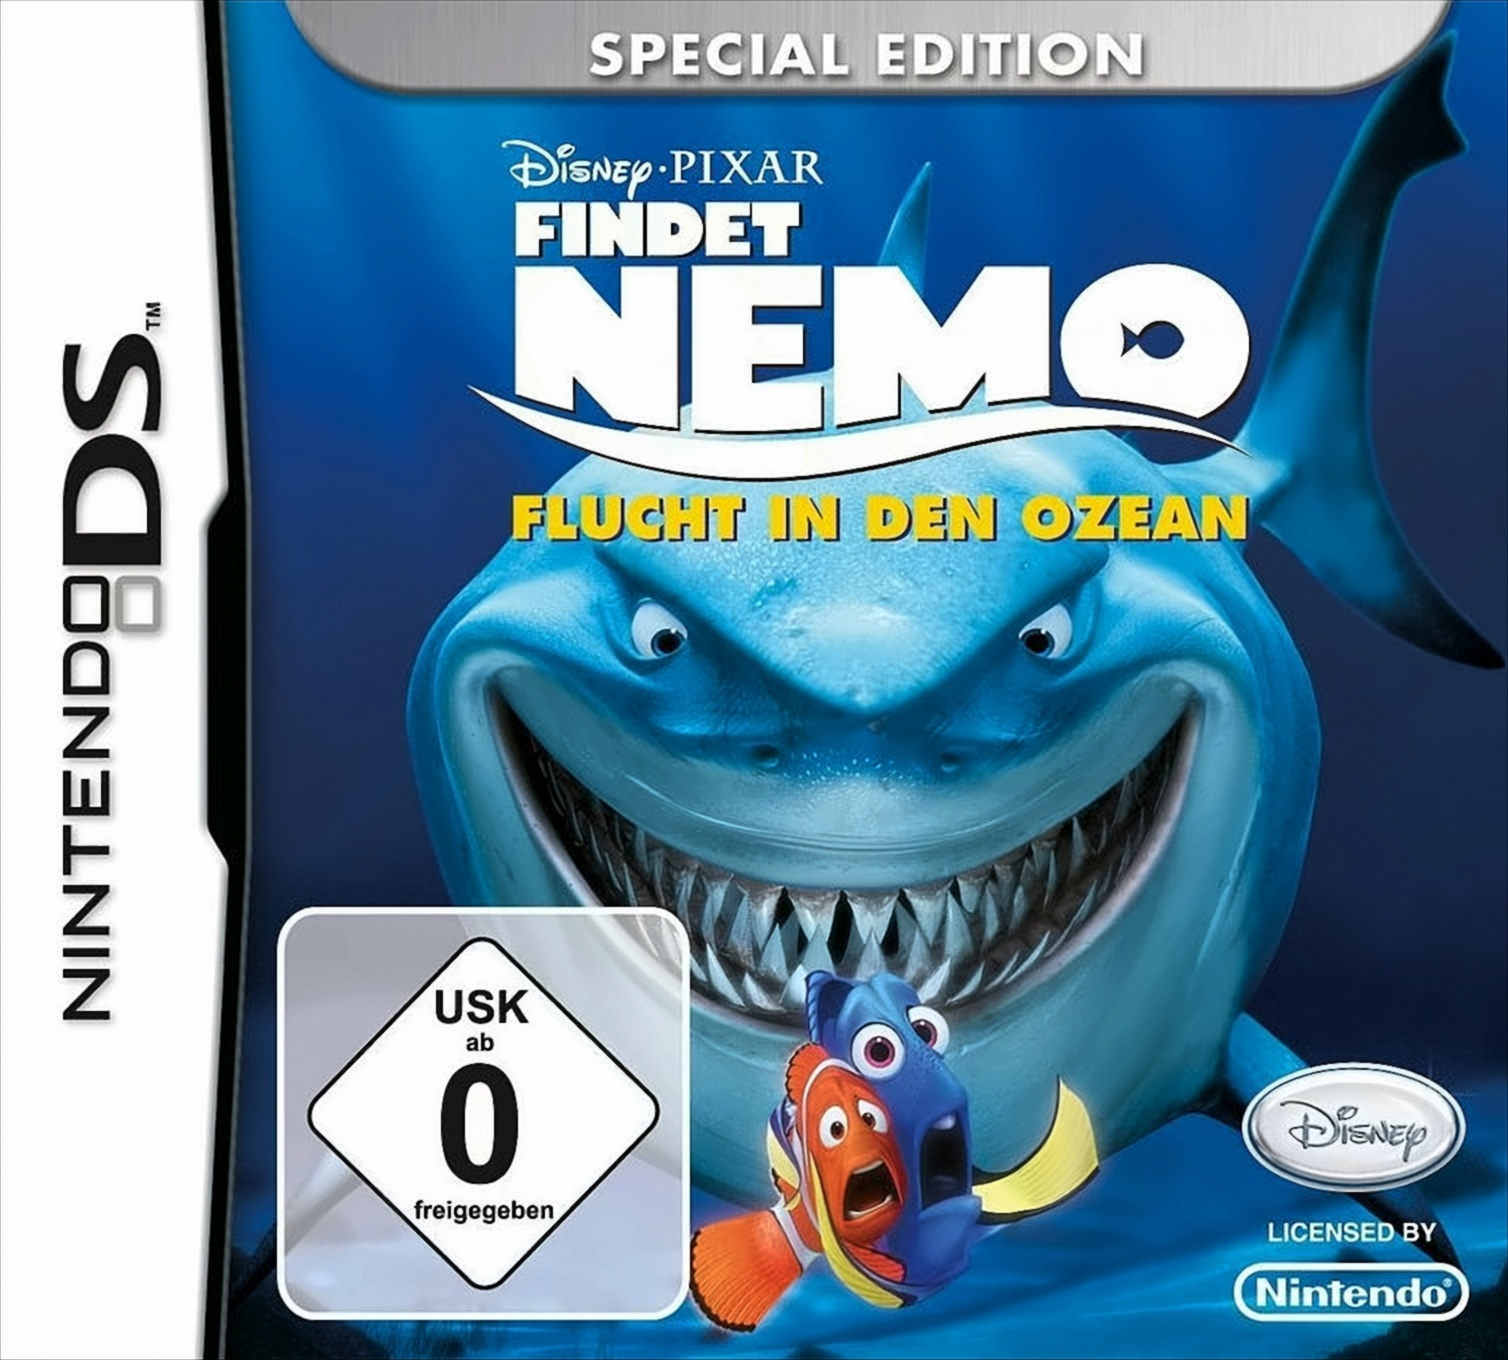 [Nintendo Ozean Flucht Special Findet - Nemo: Edition - DS] in den